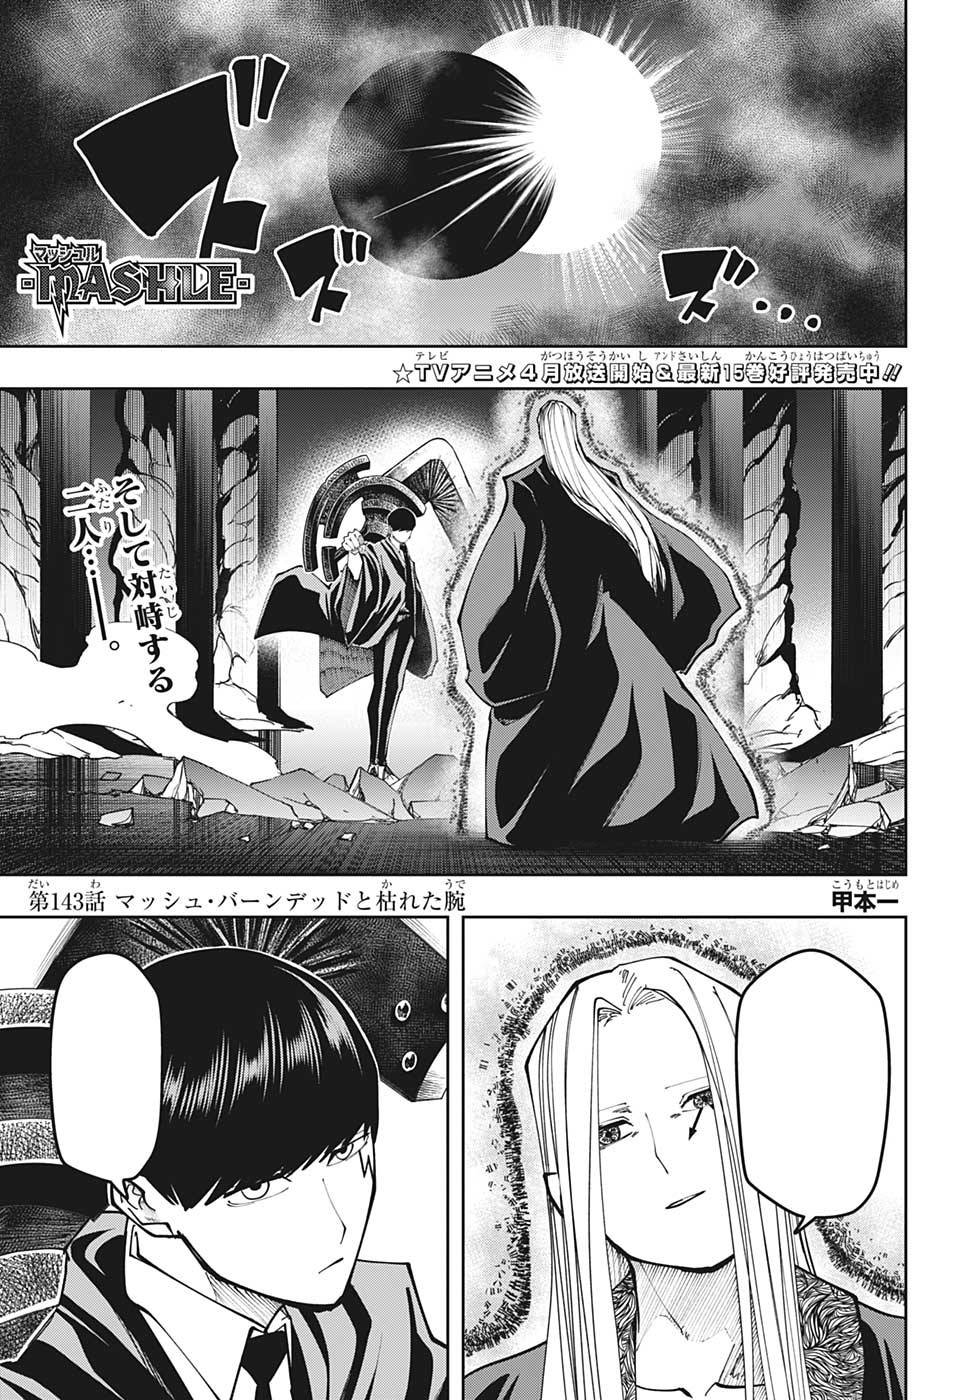 Mashle Capítulo 4 - Manga Online